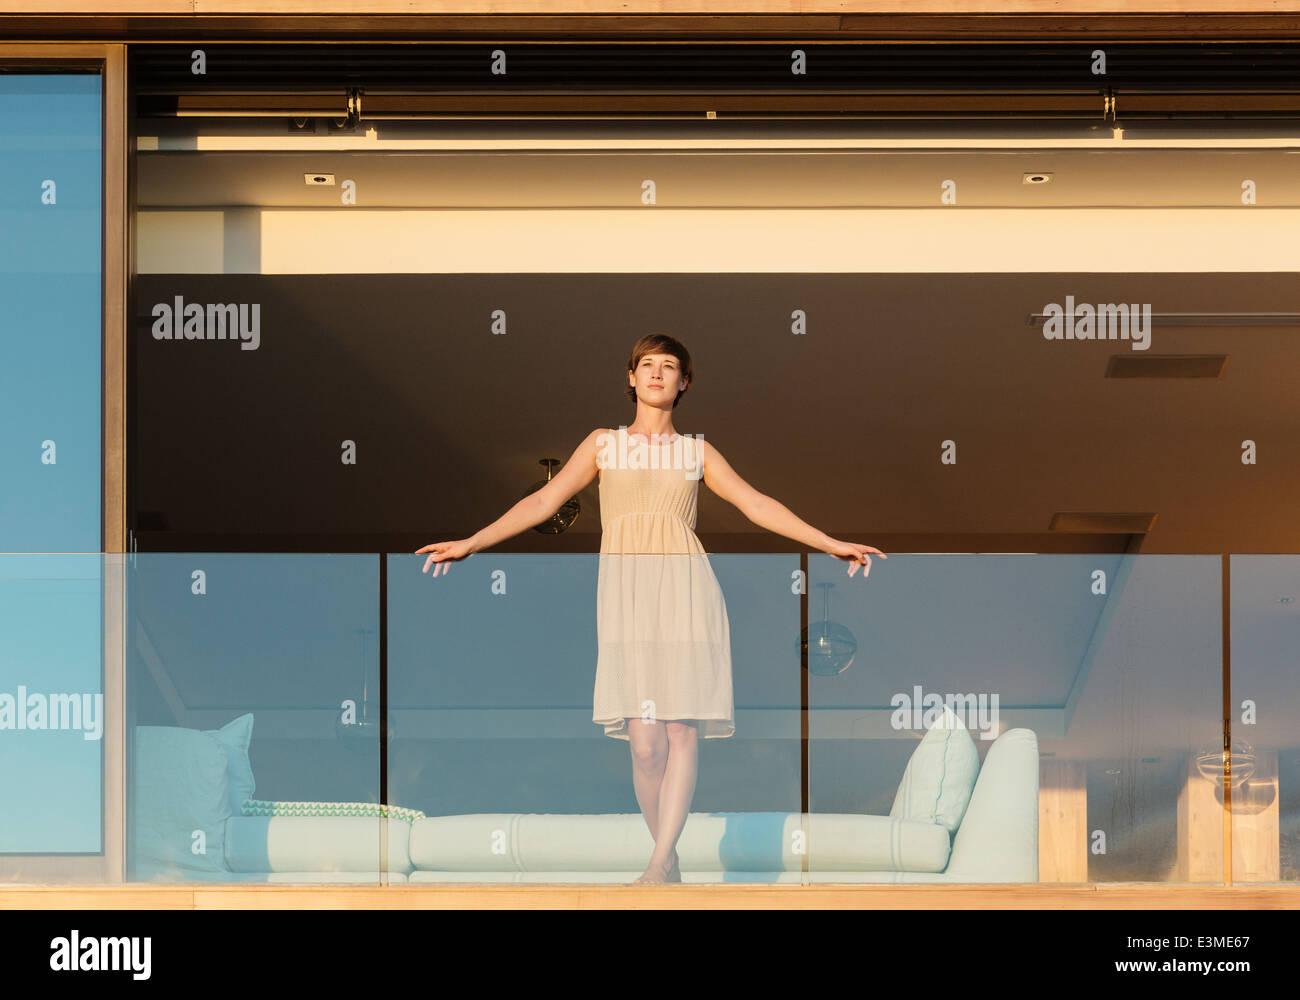 Woman standing on luxury balcony Stock Photo